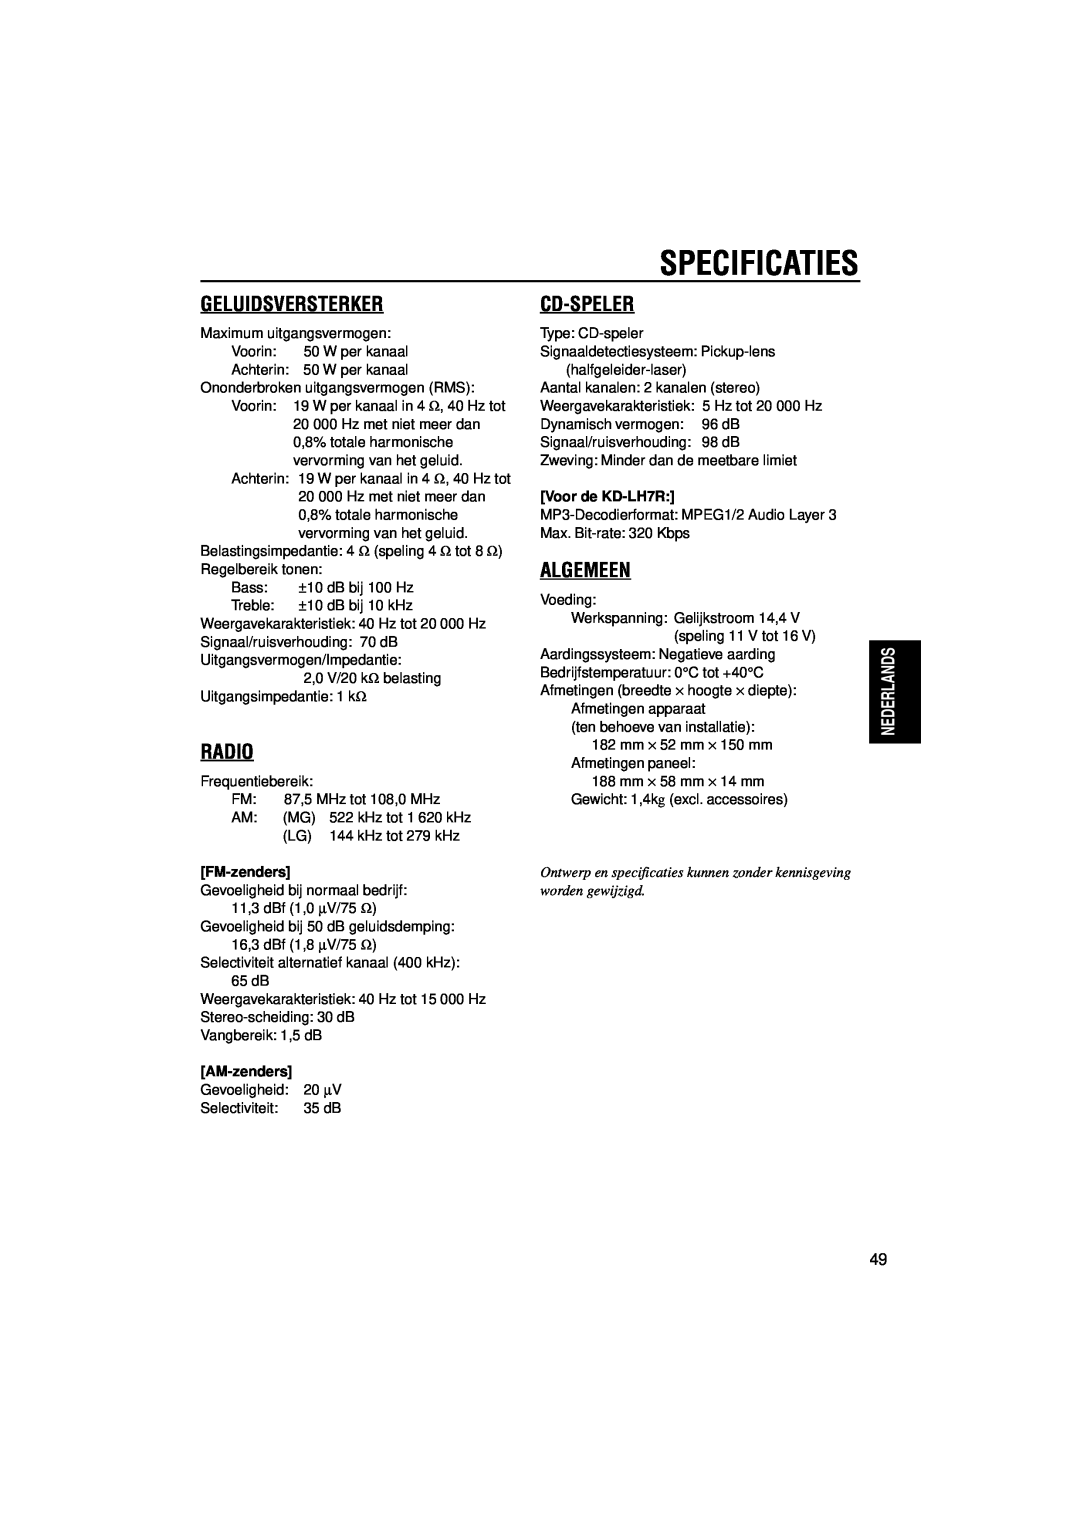 JVC KD-LH5R manual Specificaties, Geluidsversterker, Radio, Cd-Speler, Algemeen, Voor de KD-LH7R, FM-zenders, AM-zenders 